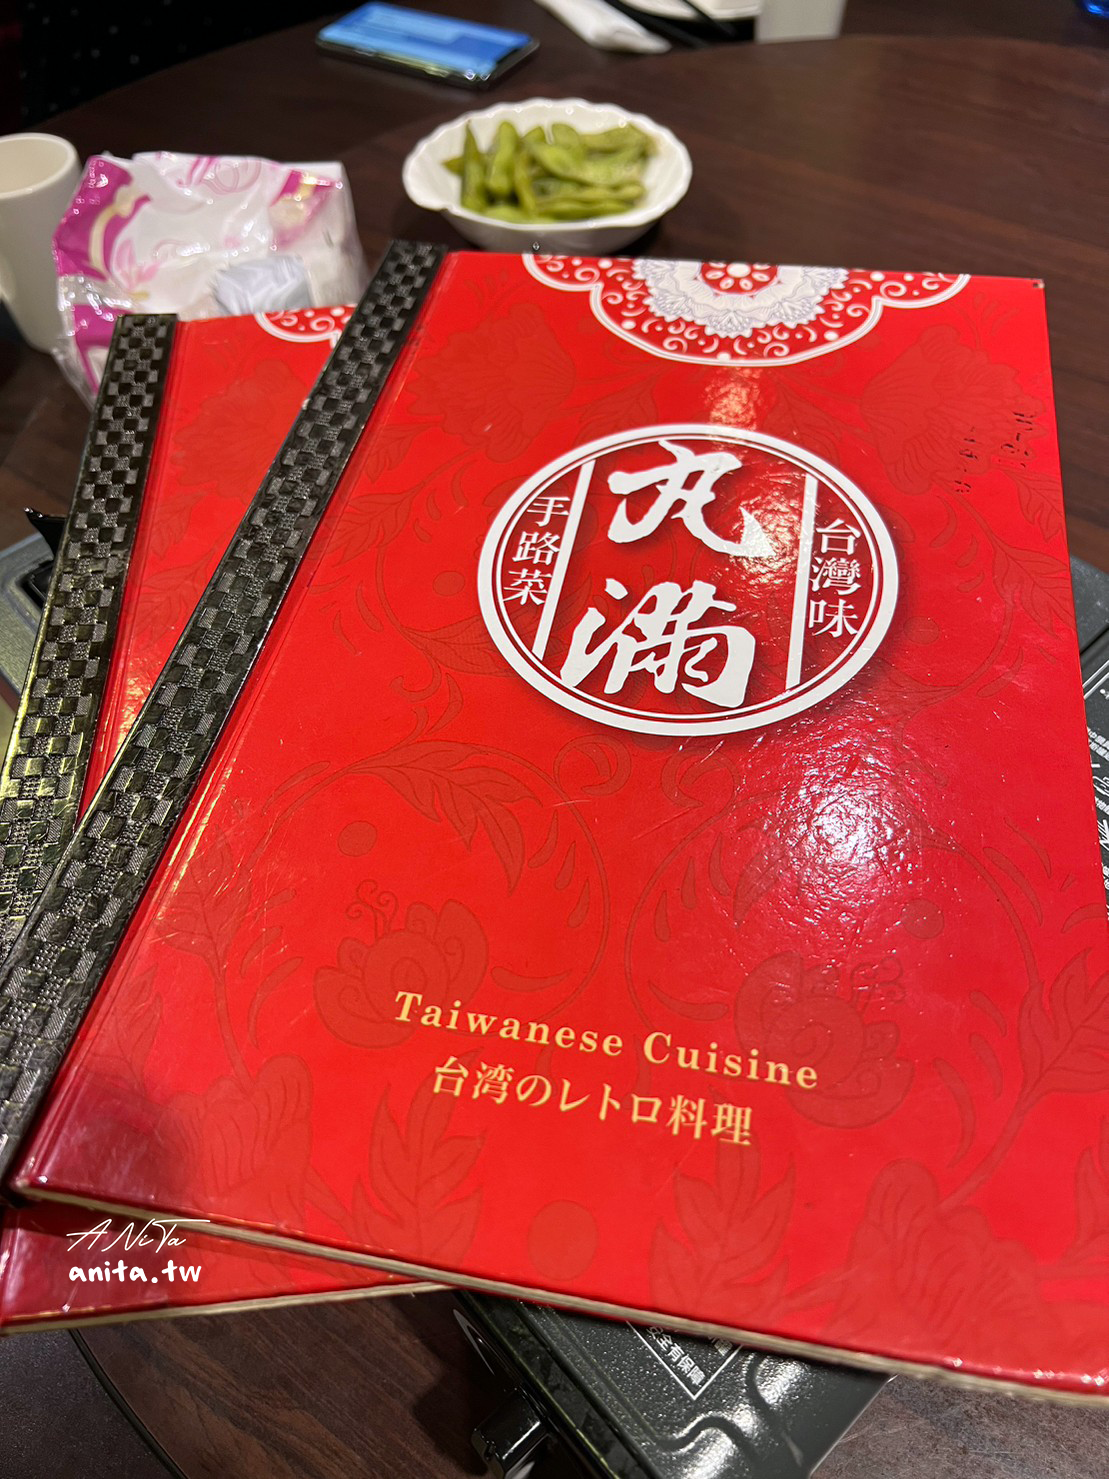 丸滿,丸滿 餐廳,丸滿台灣味手路菜,丸滿台灣味手路菜 菜單,台灣菜,手路菜,那卡西,酒家菜